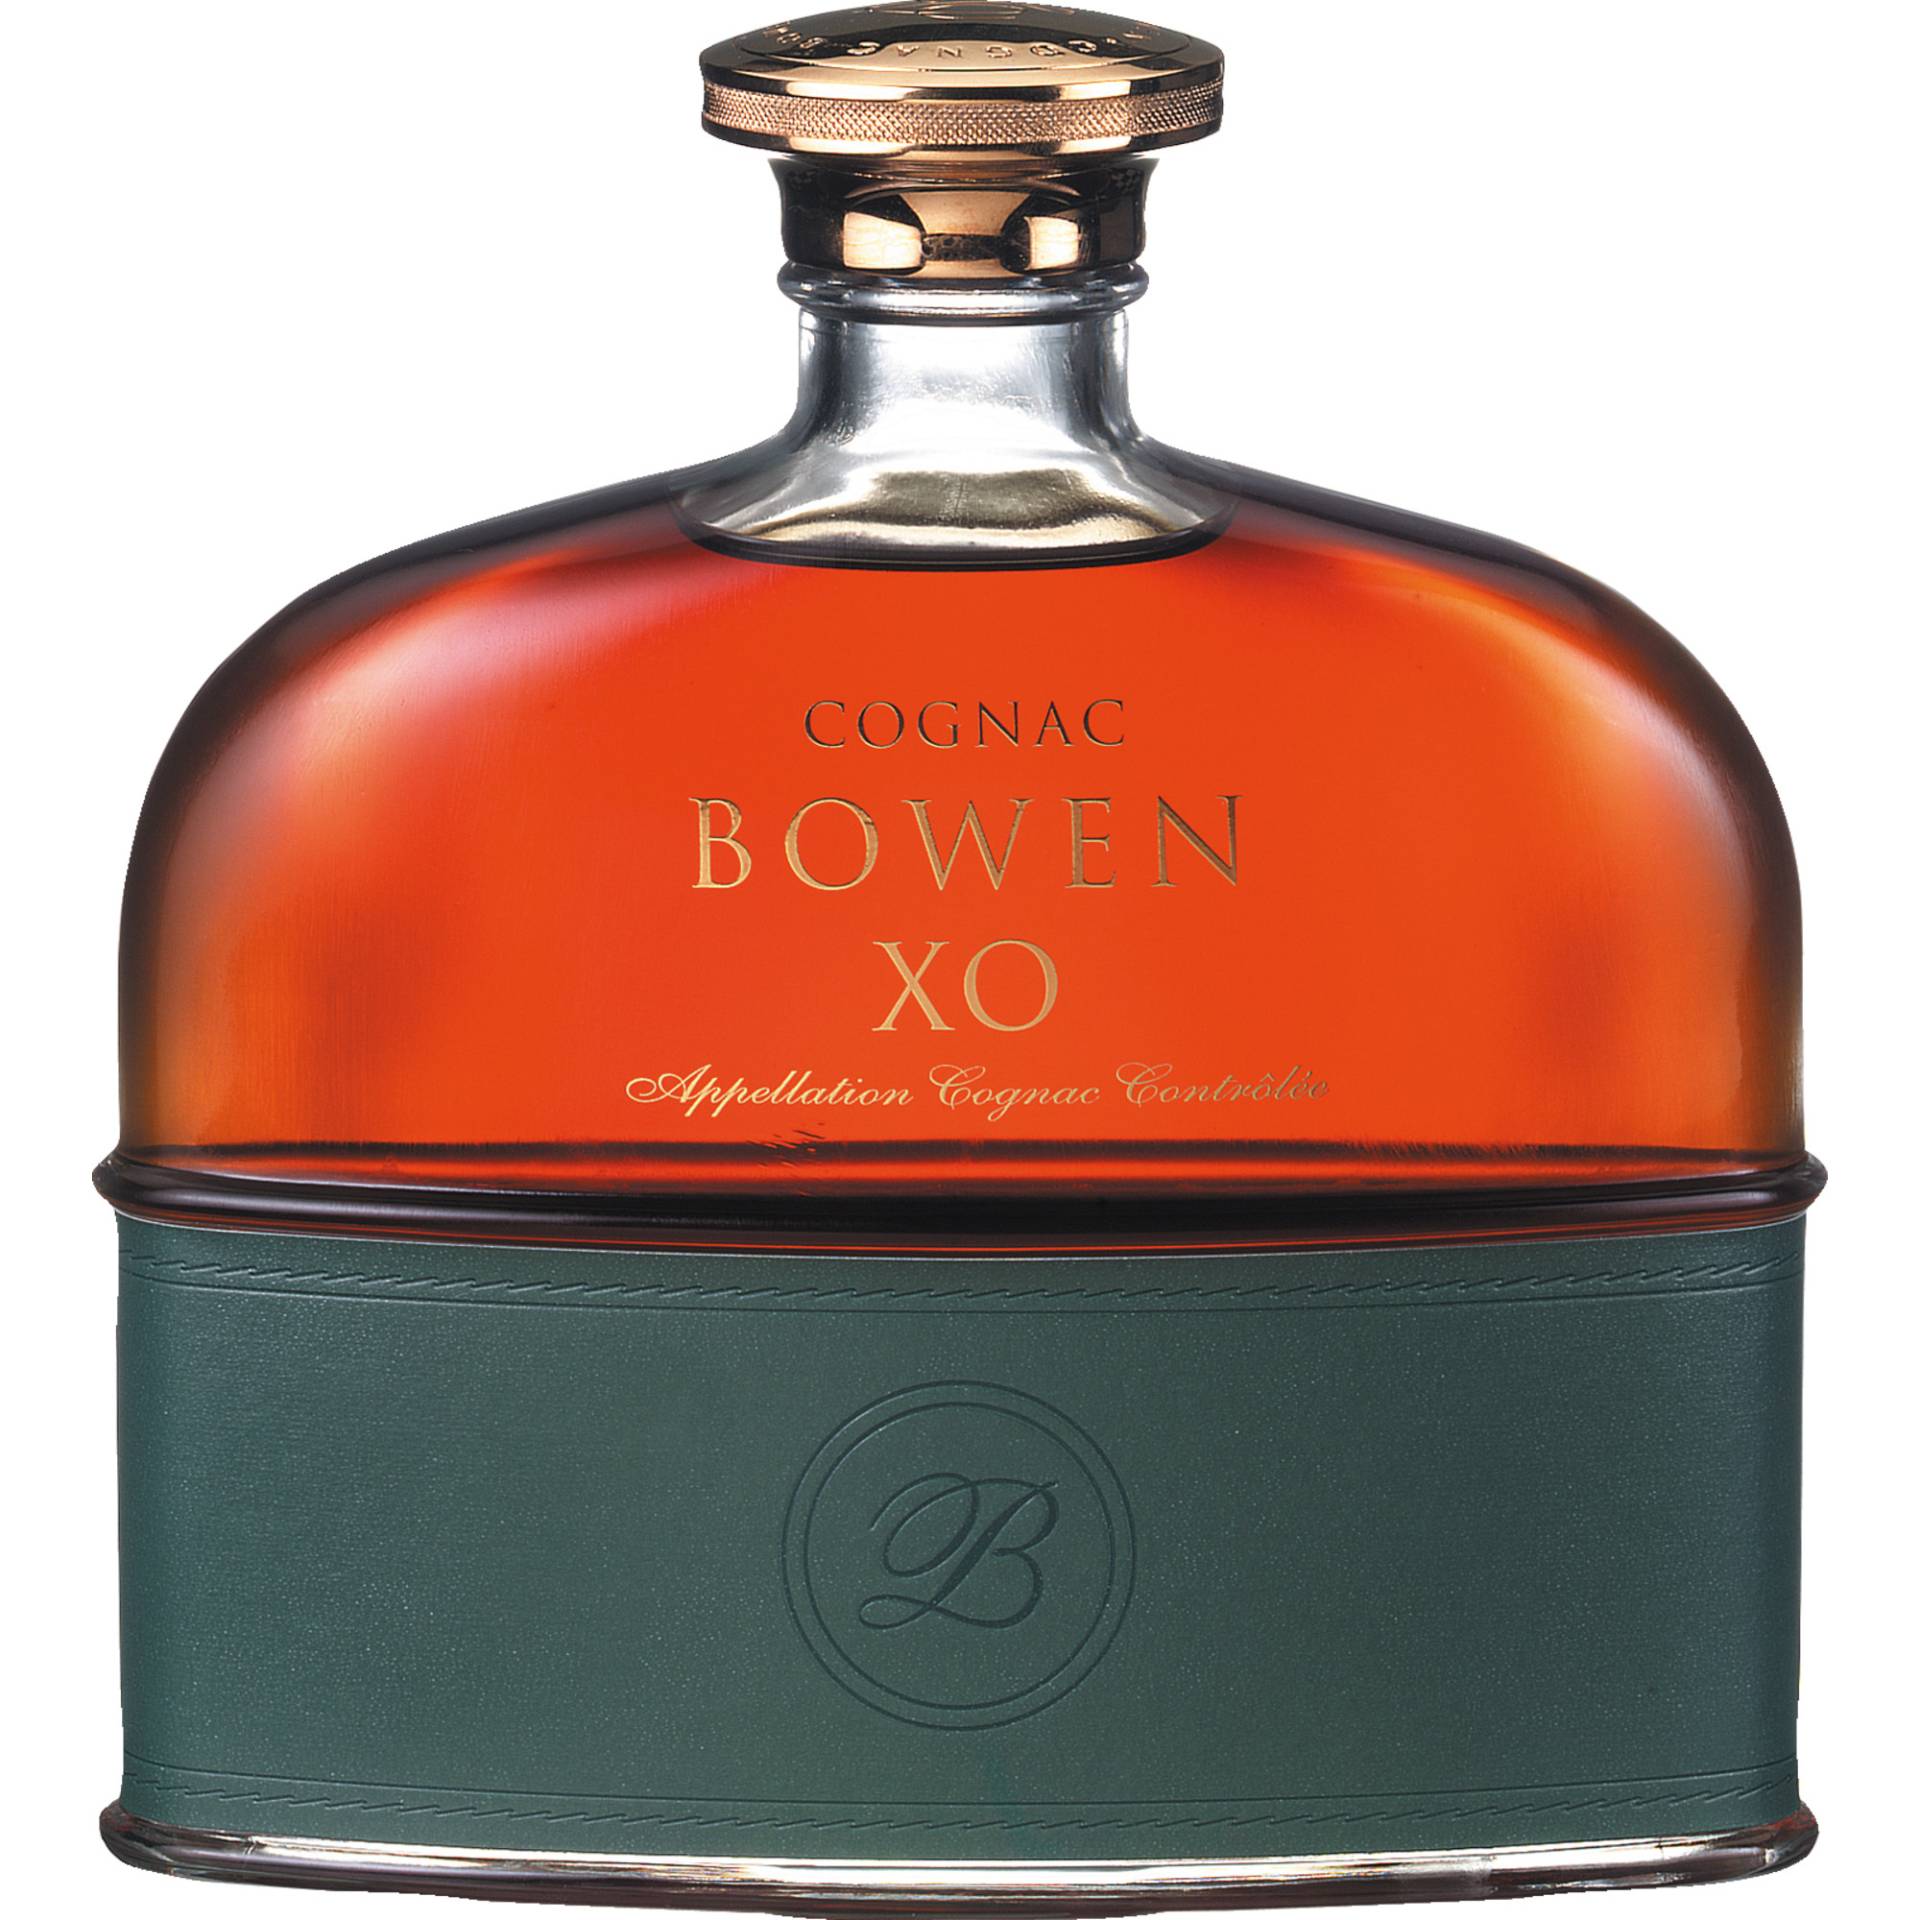 Cognac Bowen XO, Cognac AOP, 0,7L, 40% Vol., Geschenketui, Cognac, Spirituosen von Cognac Bowen, 51 Rue Élysée Loustalot, BP 86, 17412 St Jean d´Angély, Frankreich